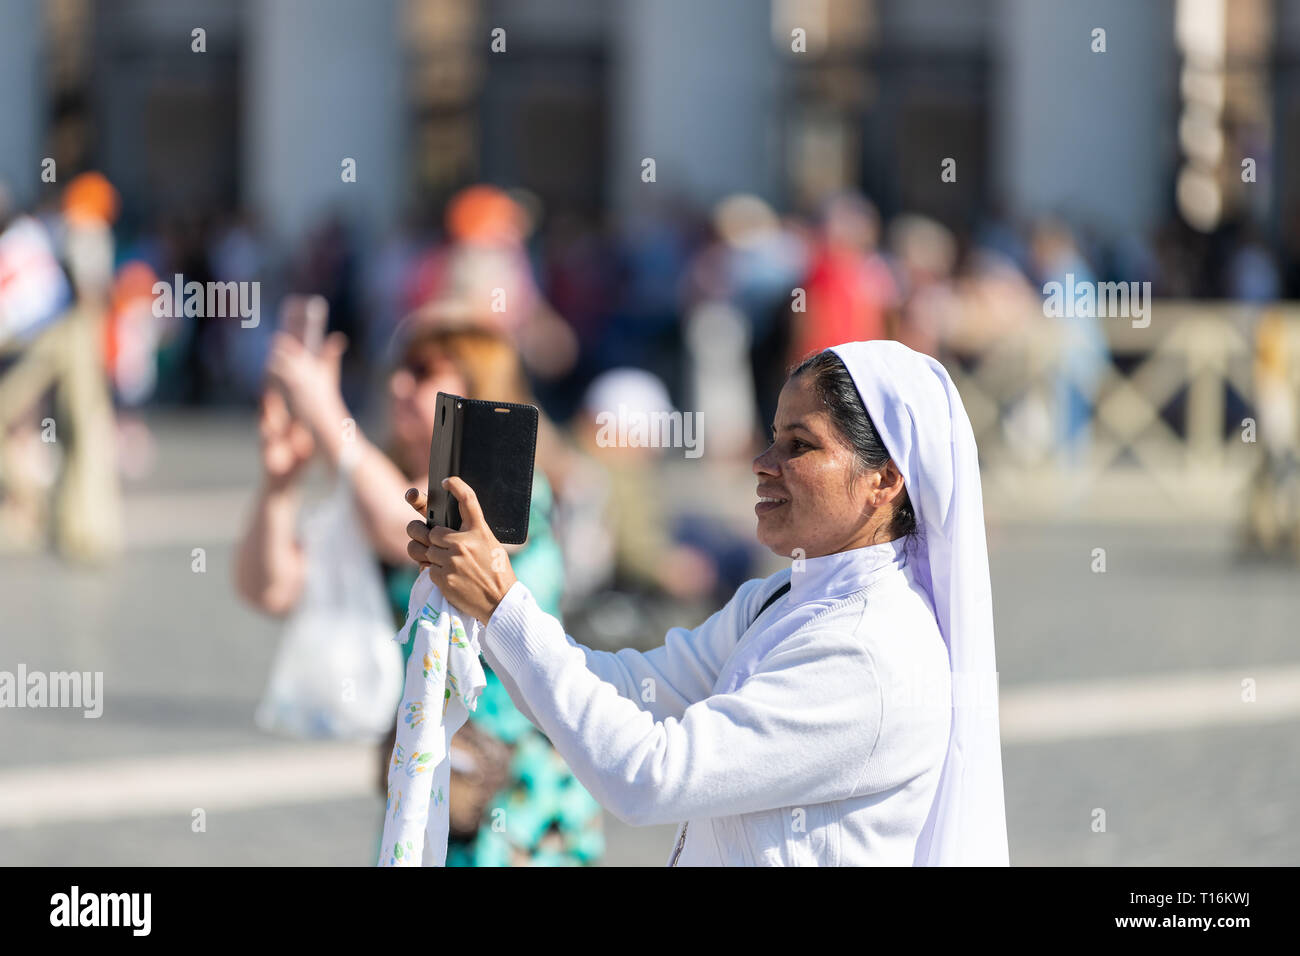 Rome, Italie - 5 septembre 2018 : Closeup portrait de Christian religieuse catholique heureux portrait en habit blanc voile audience générale du pape souriant taki Banque D'Images